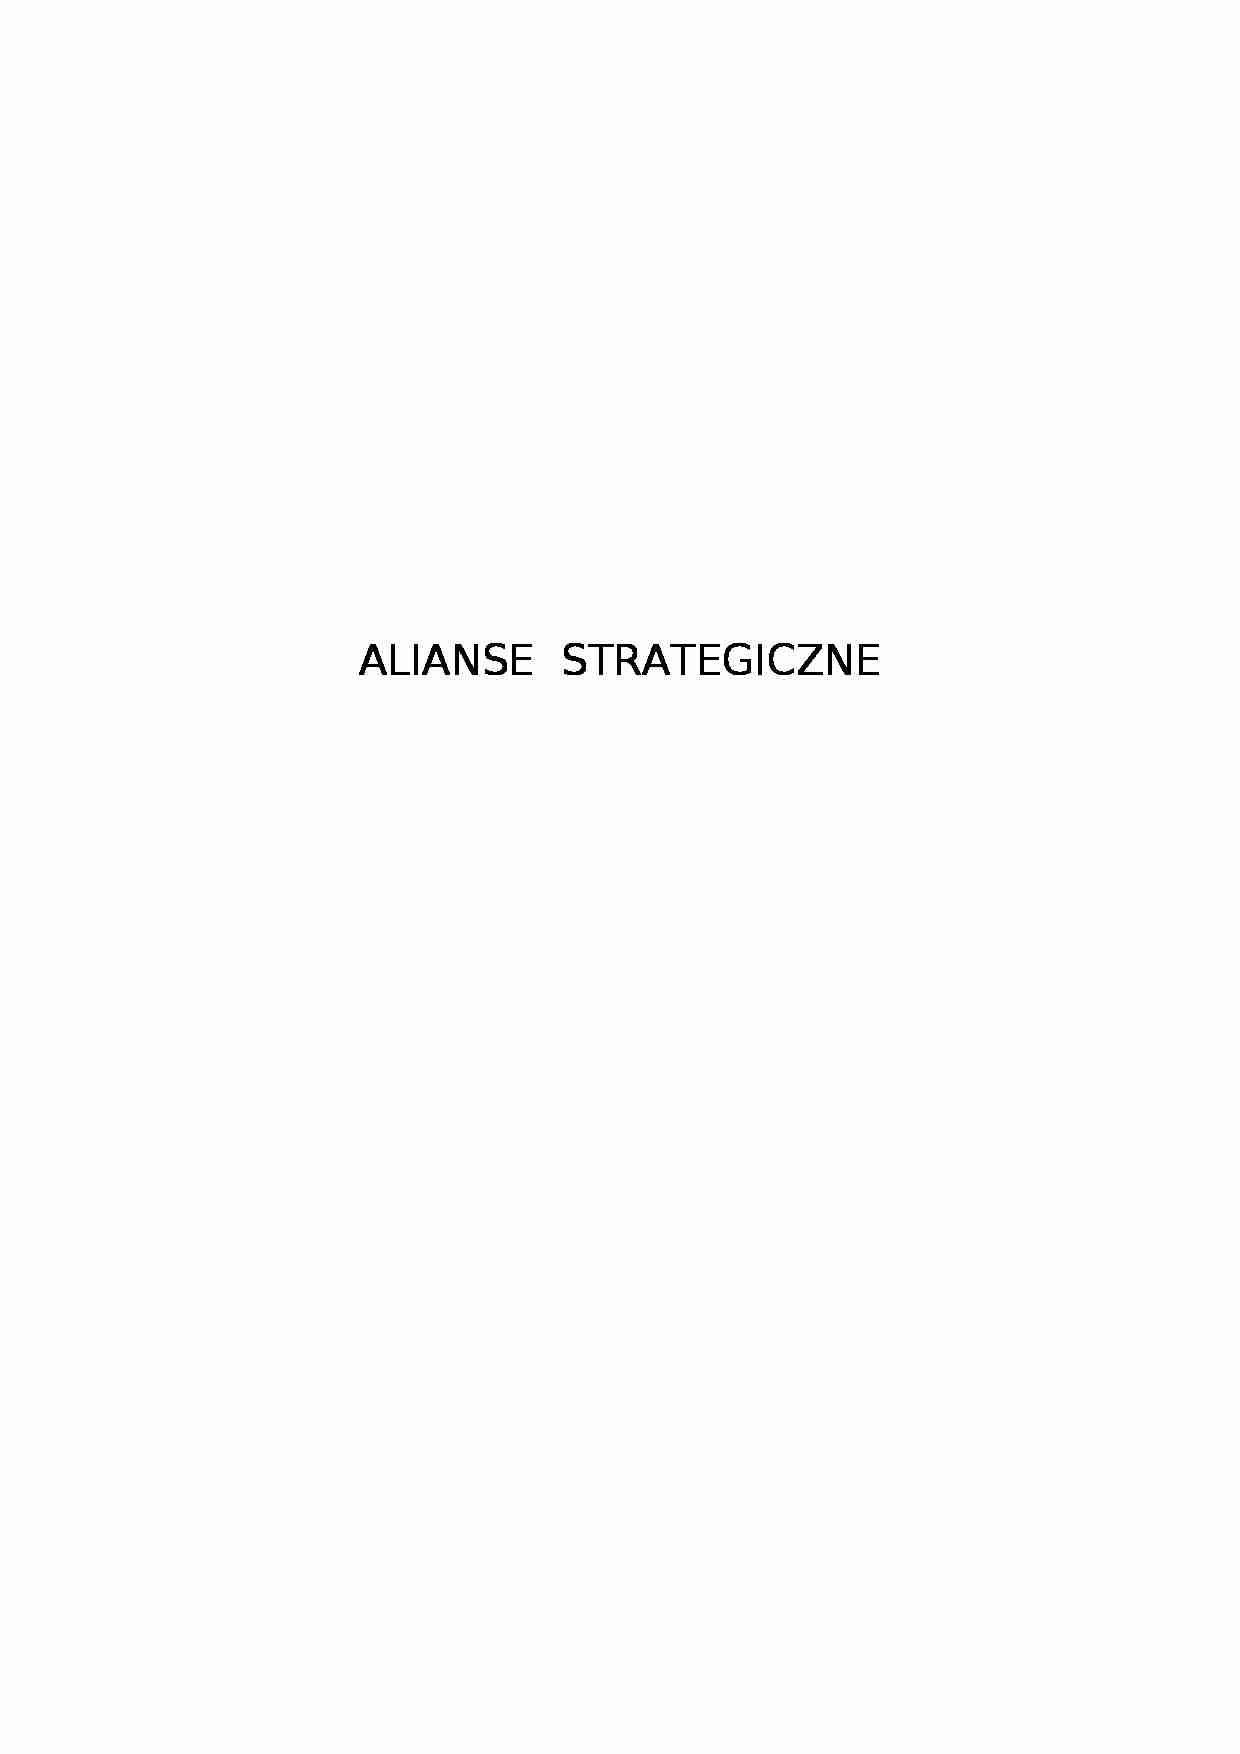 Alianse strategiczne - Globalizacja - strona 1